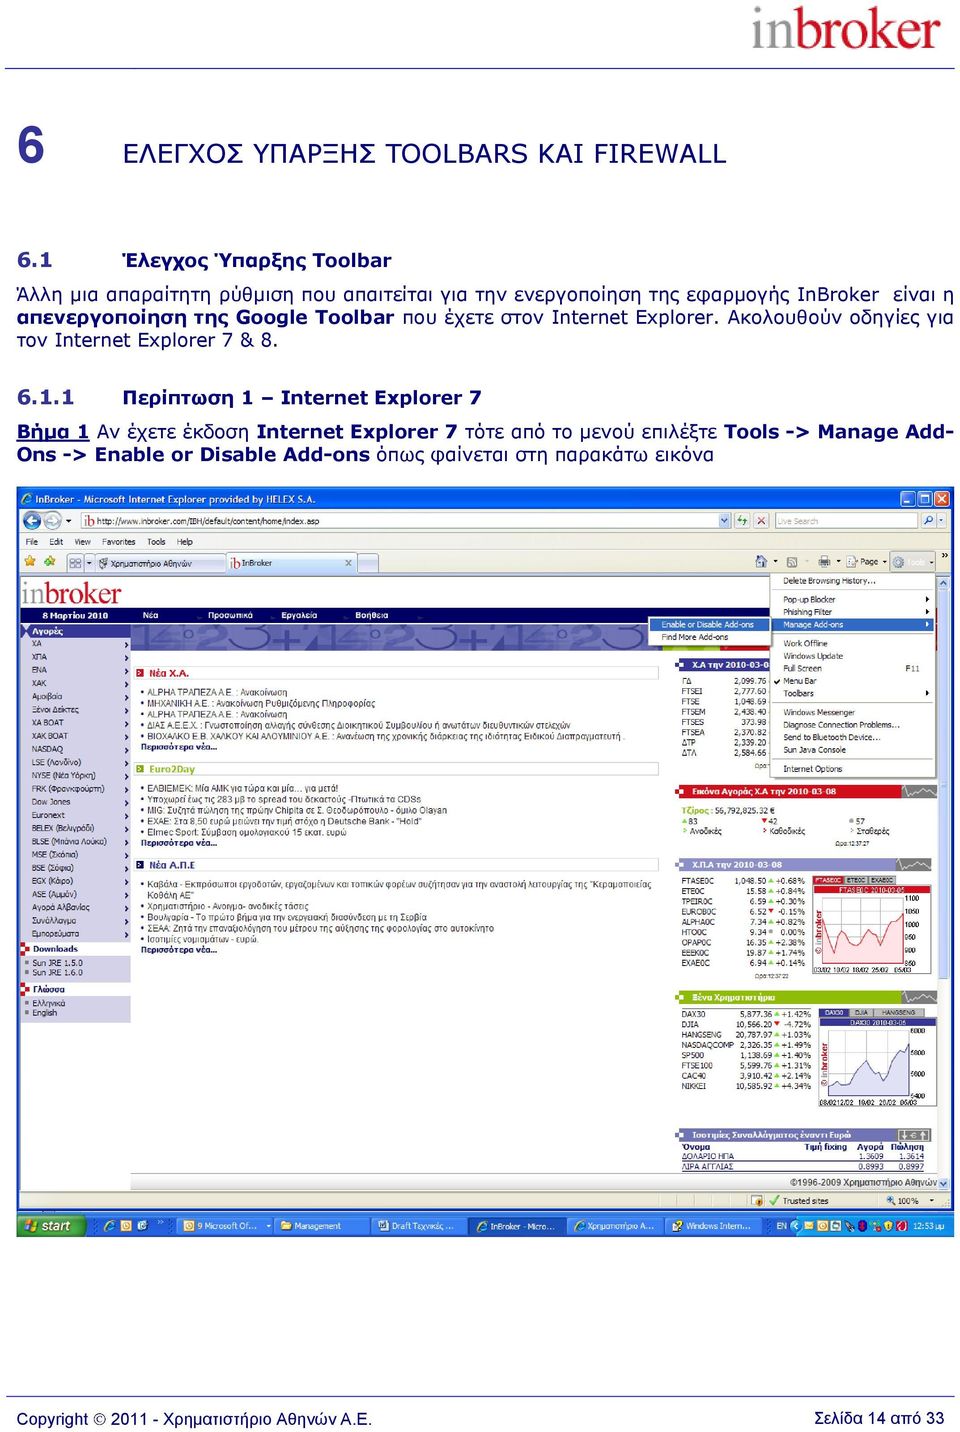 απενεπγοποίηζη ηηρ Google Toolbar πνπ έρεηε ζηνλ Internet Explorer. Αθνινπζνύλ νδεγίεο γηα ηνλ Internet Explorer 7 & 8. 6.1.